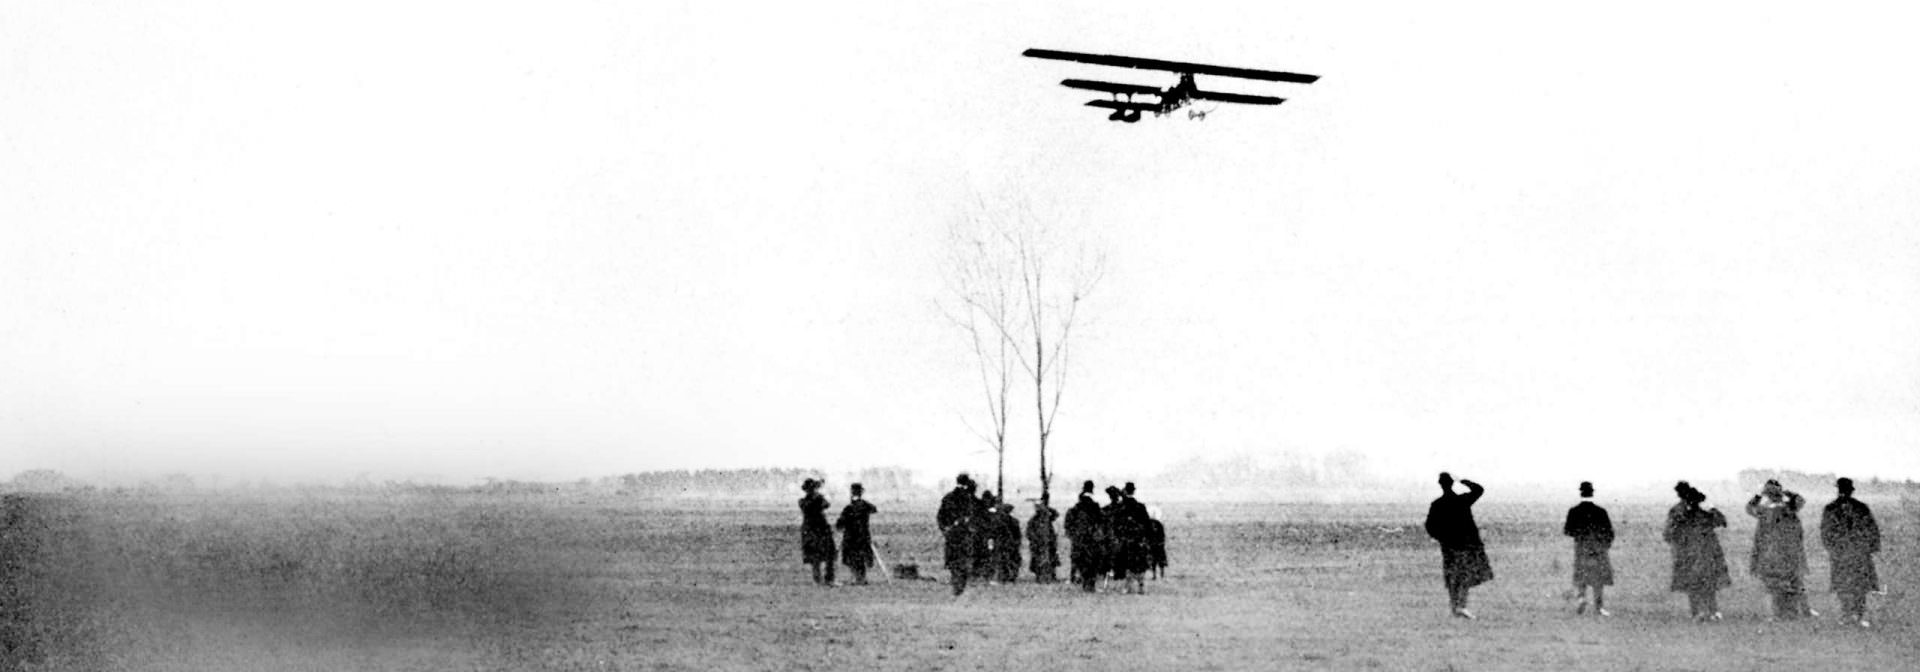 Historyczna czarno-biała fotografia przedstawiająca dwupłatowiec BMW lecący nisko nad polem z grupą ludzi obserwujących z ziemi.